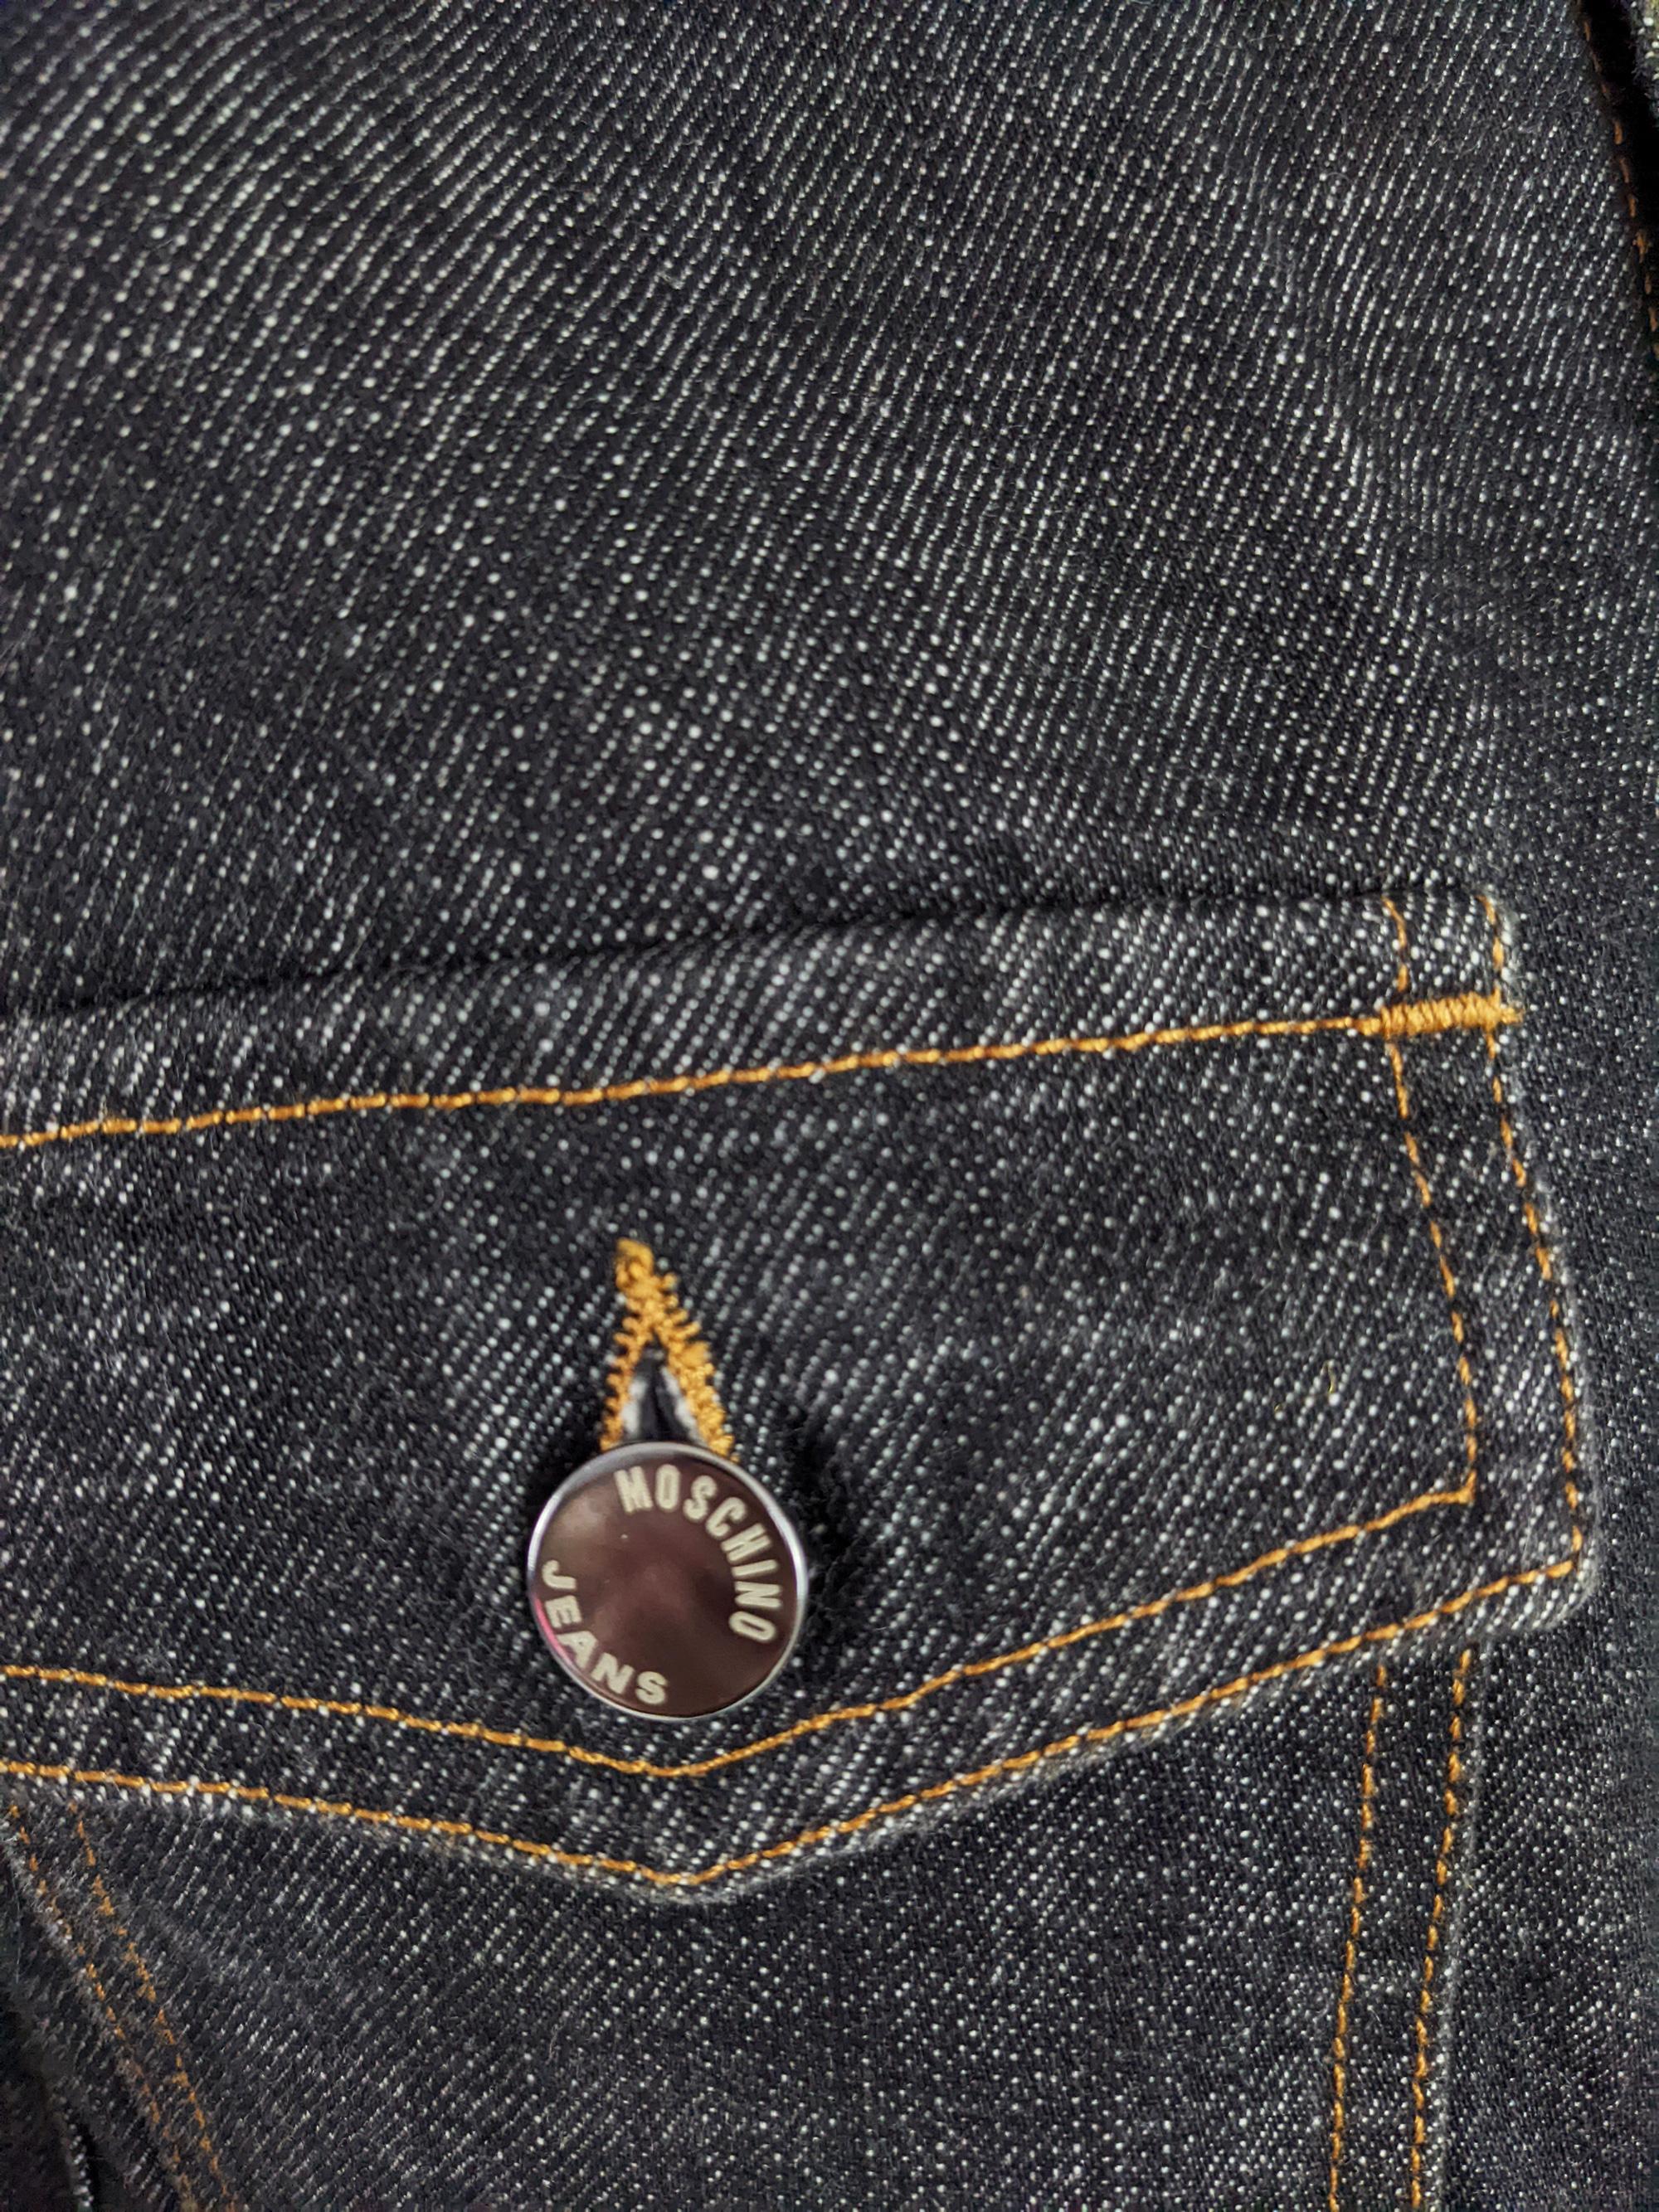 Moschino Herren Vintage Denim-Jeansjacke mit Nieten und Friedensschild in Schwarz, 1990er Jahre 1